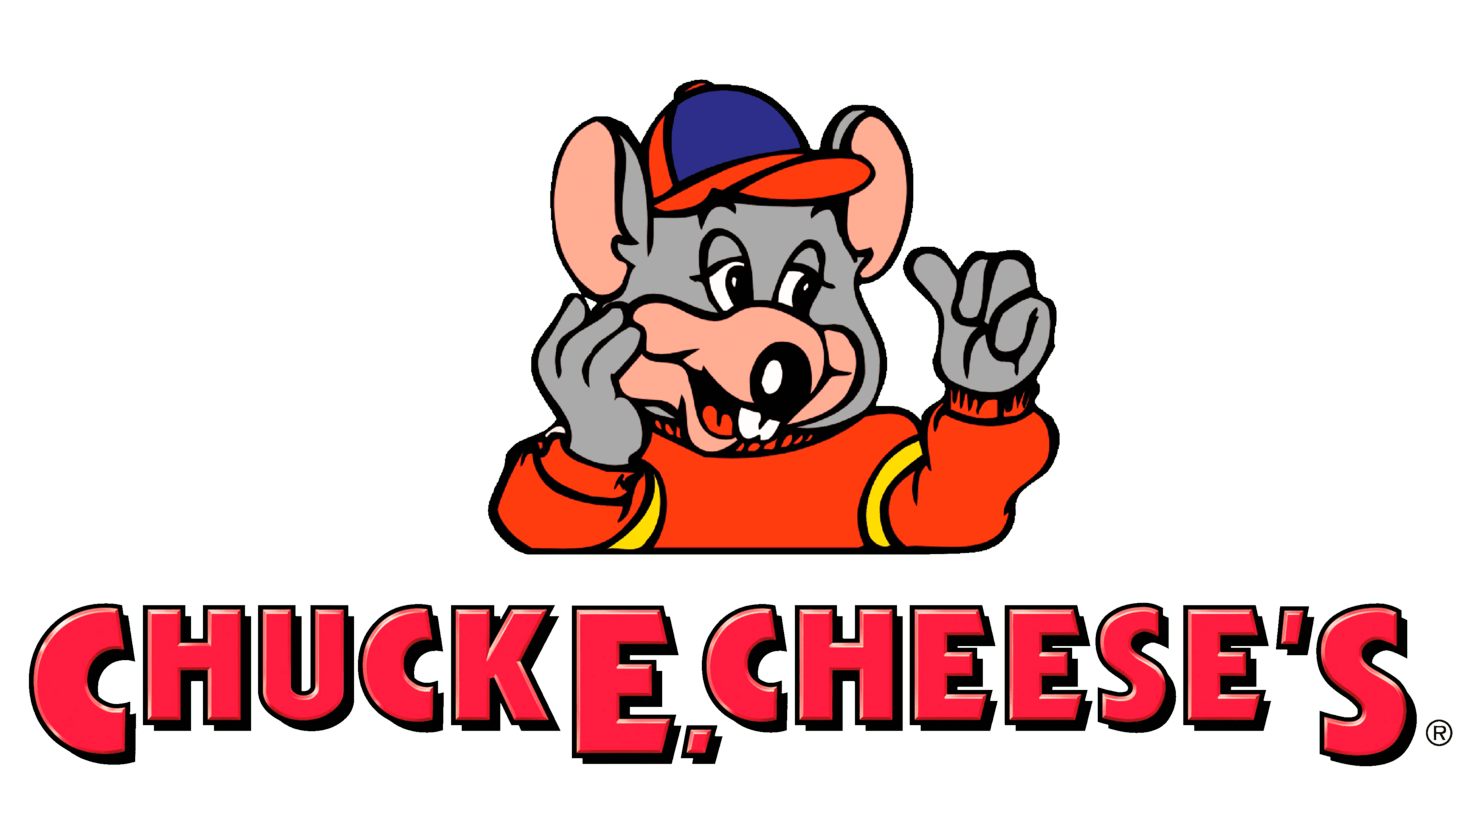 Chuck e. cheeses second era sign 1994 1998